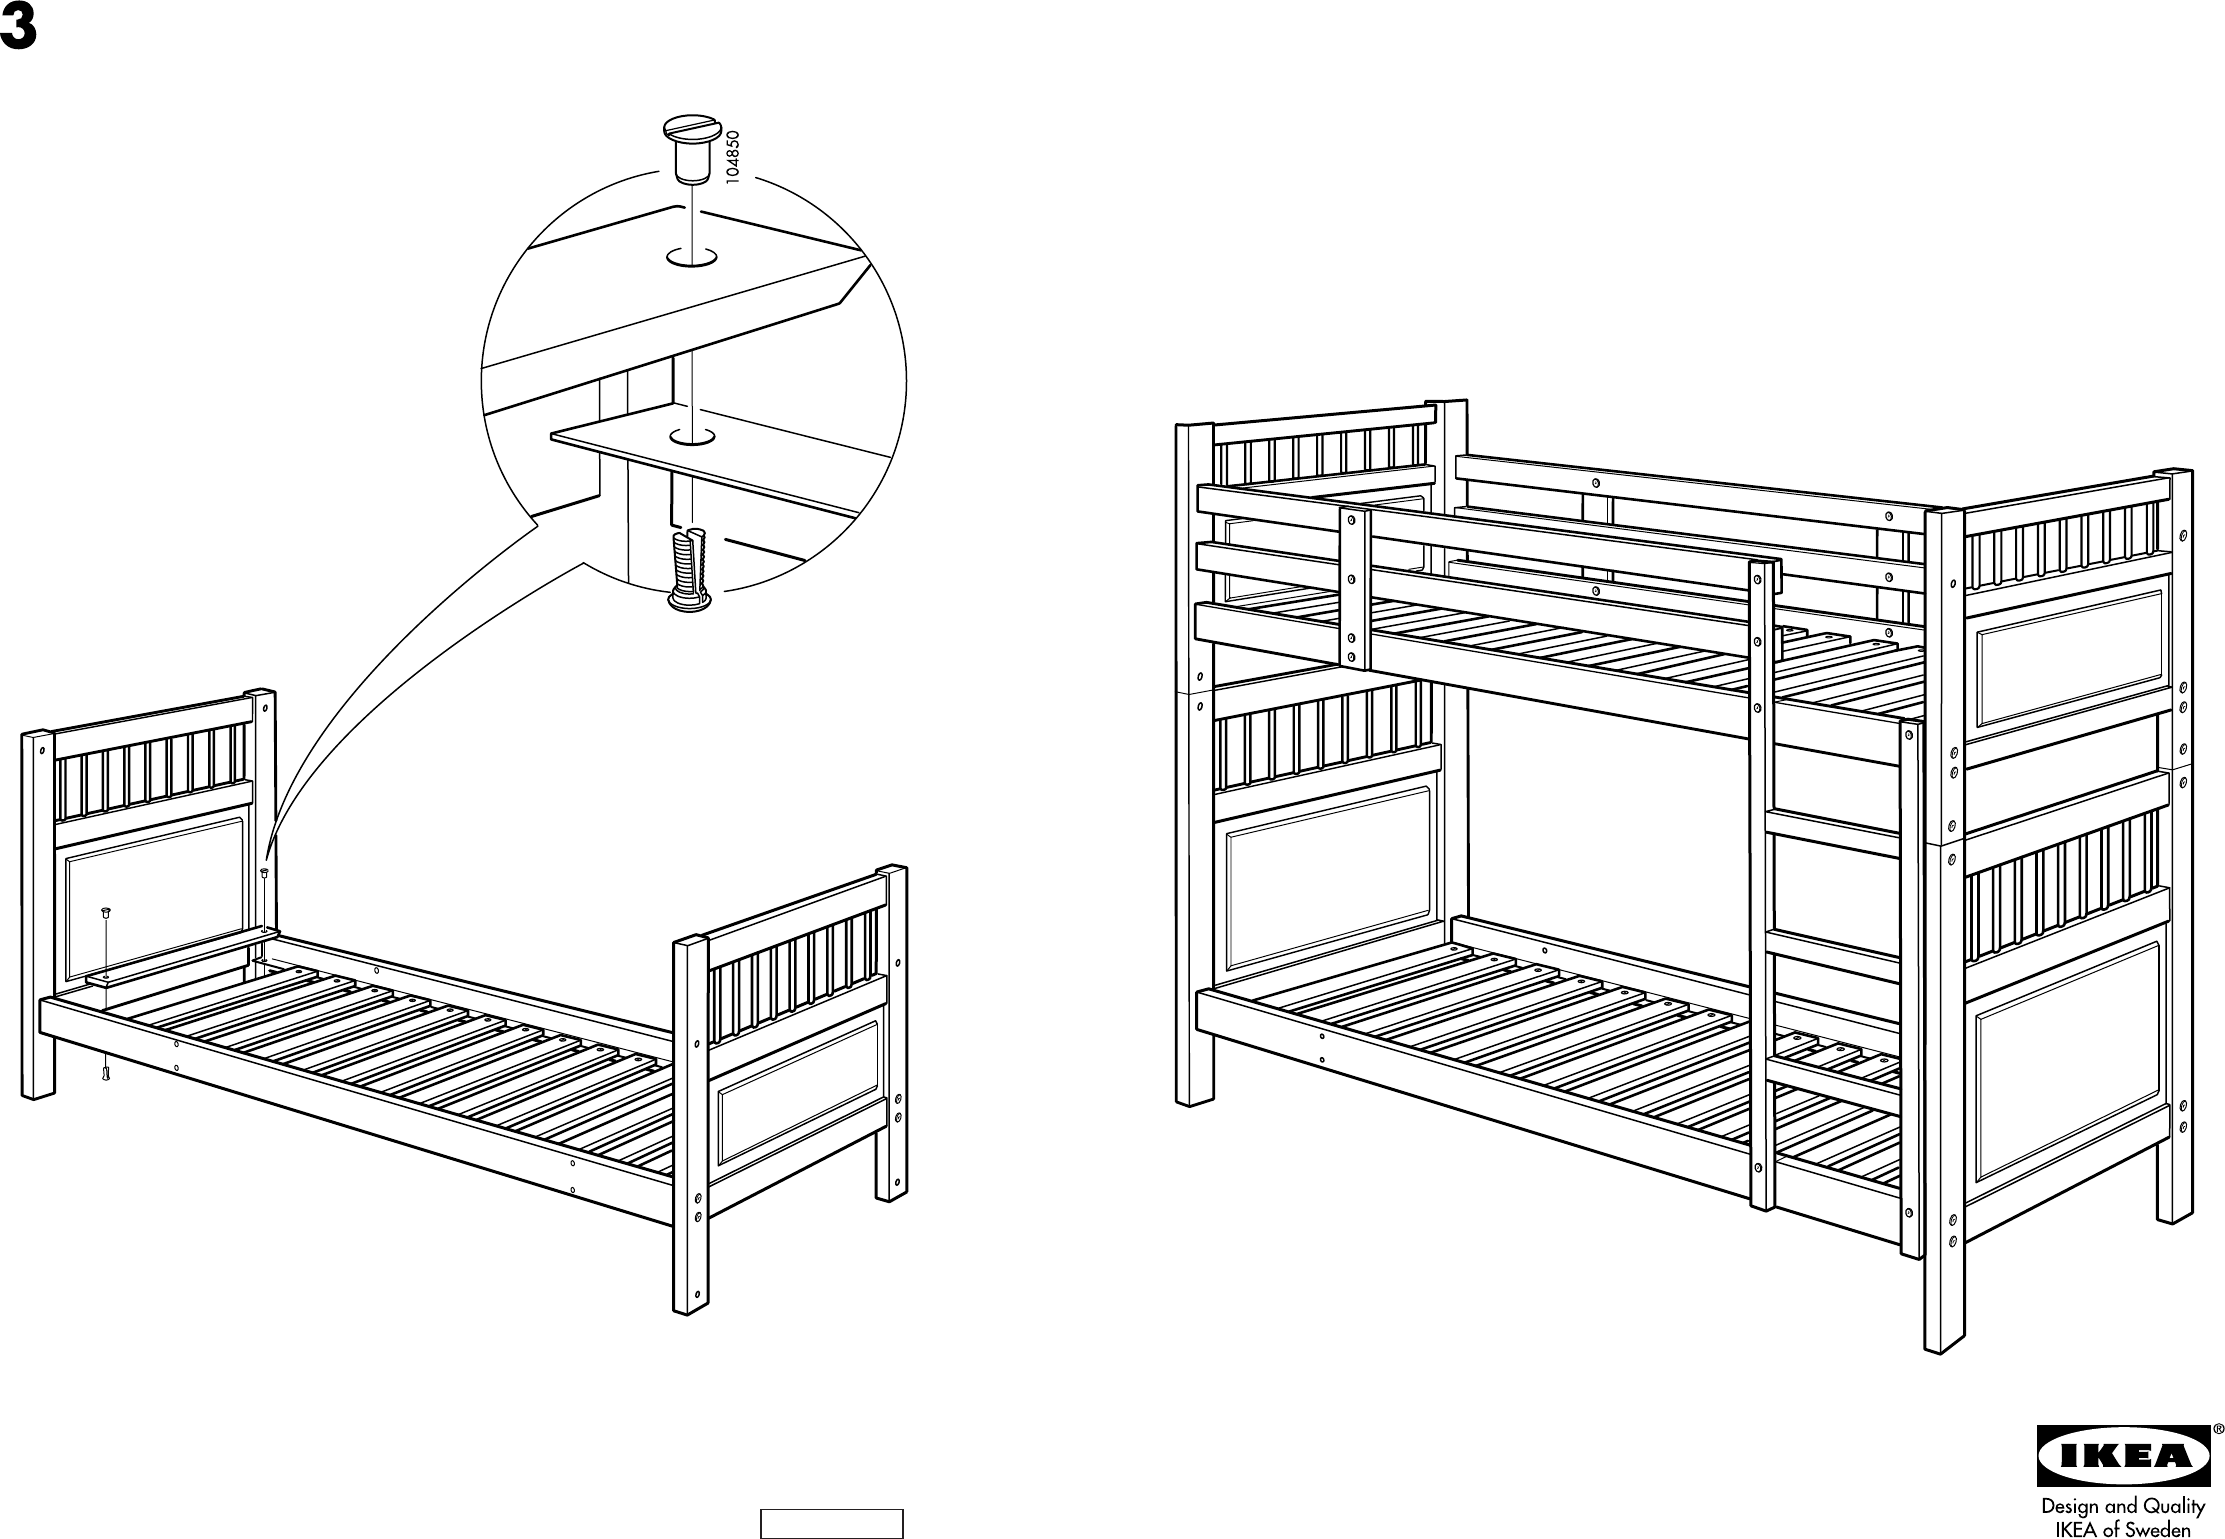 Pelagisch hout Trouw ikea hemnes bunk bed for Sale,Up To OFF 66%